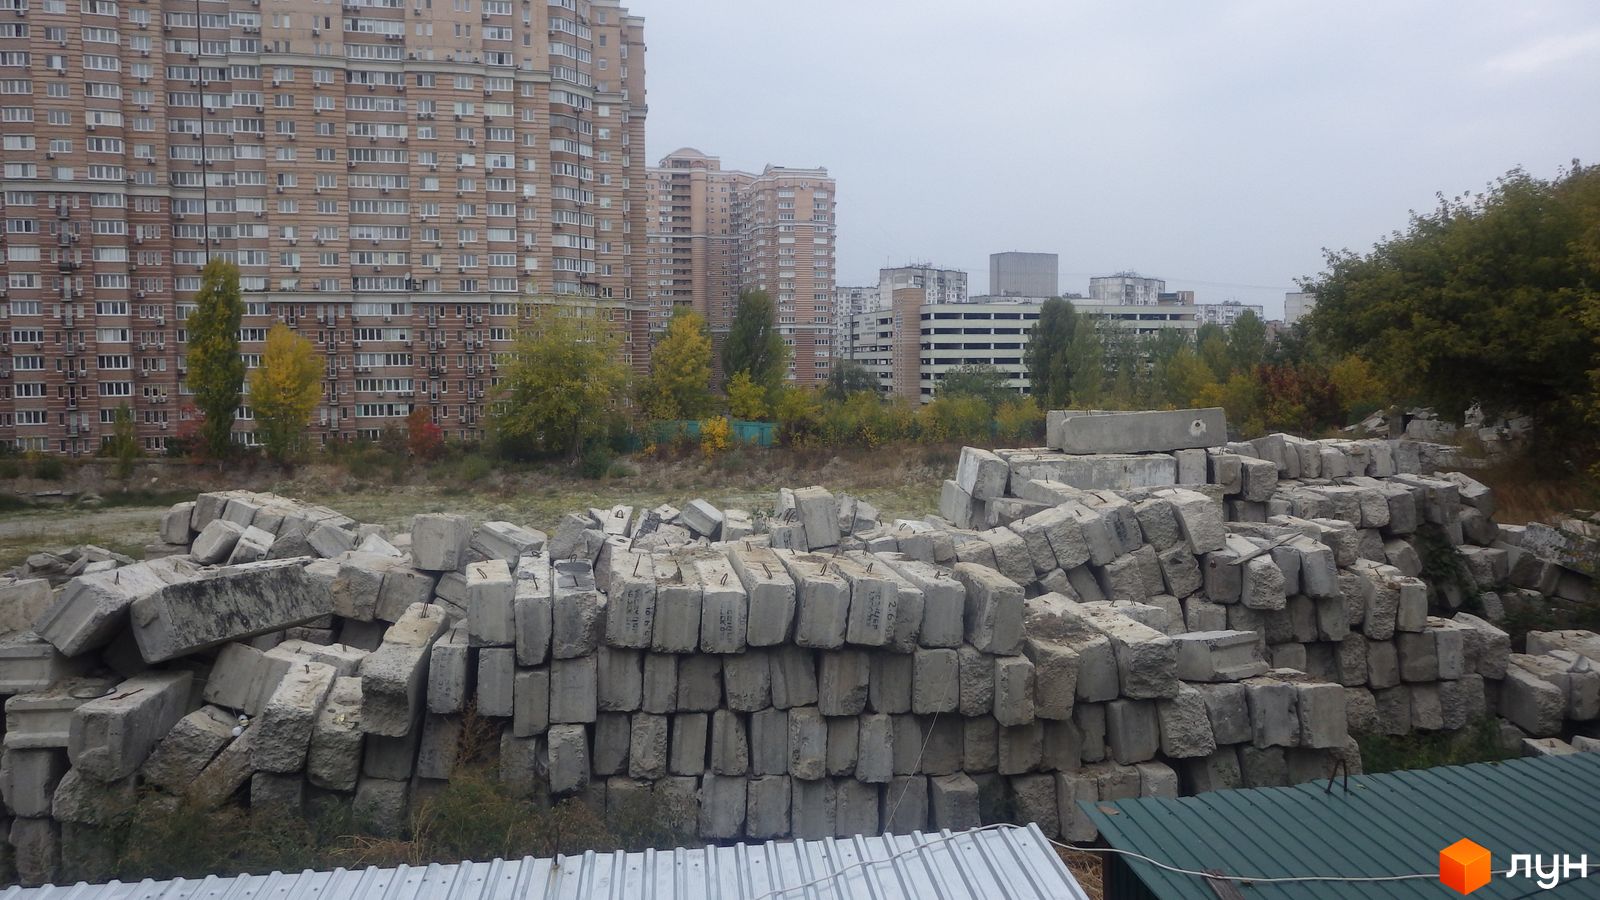 Ход строительства ул. Цимбалов Яр, 31, 0, сентябрь 2019